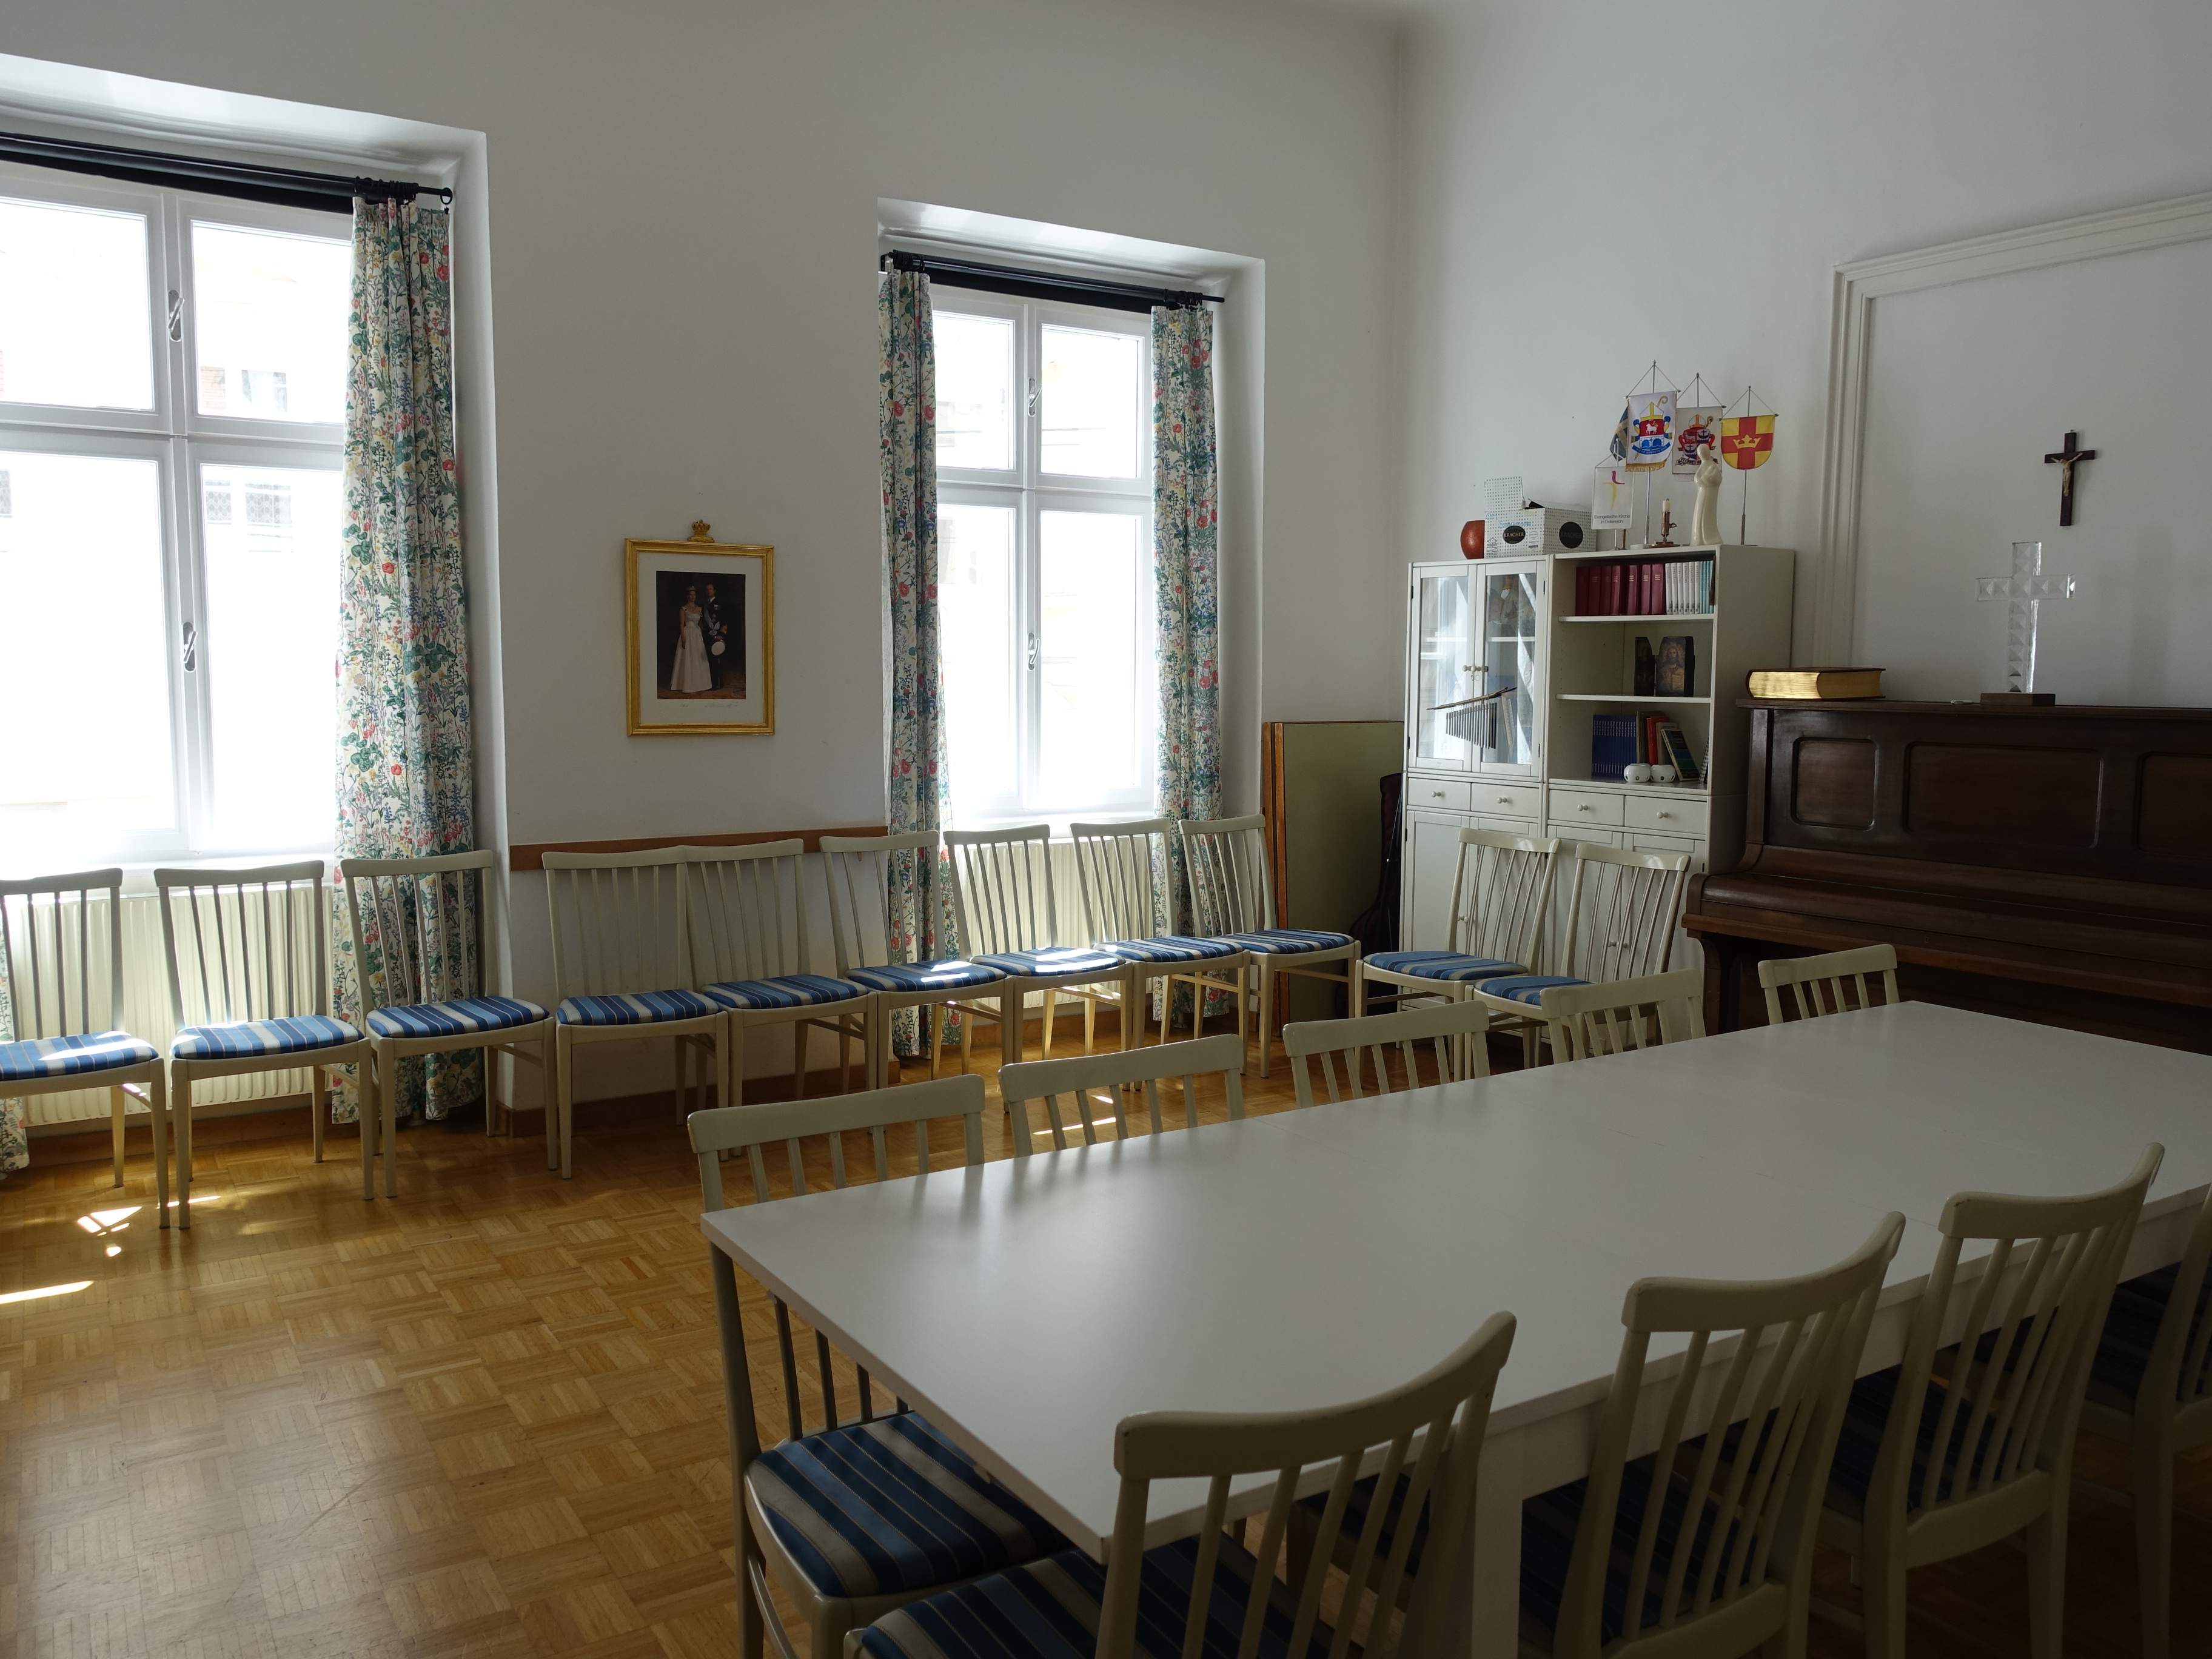 Kuva salista, jossa näkyy pöytiä ja tuoleja sekä piano, taustalla ikkunat.